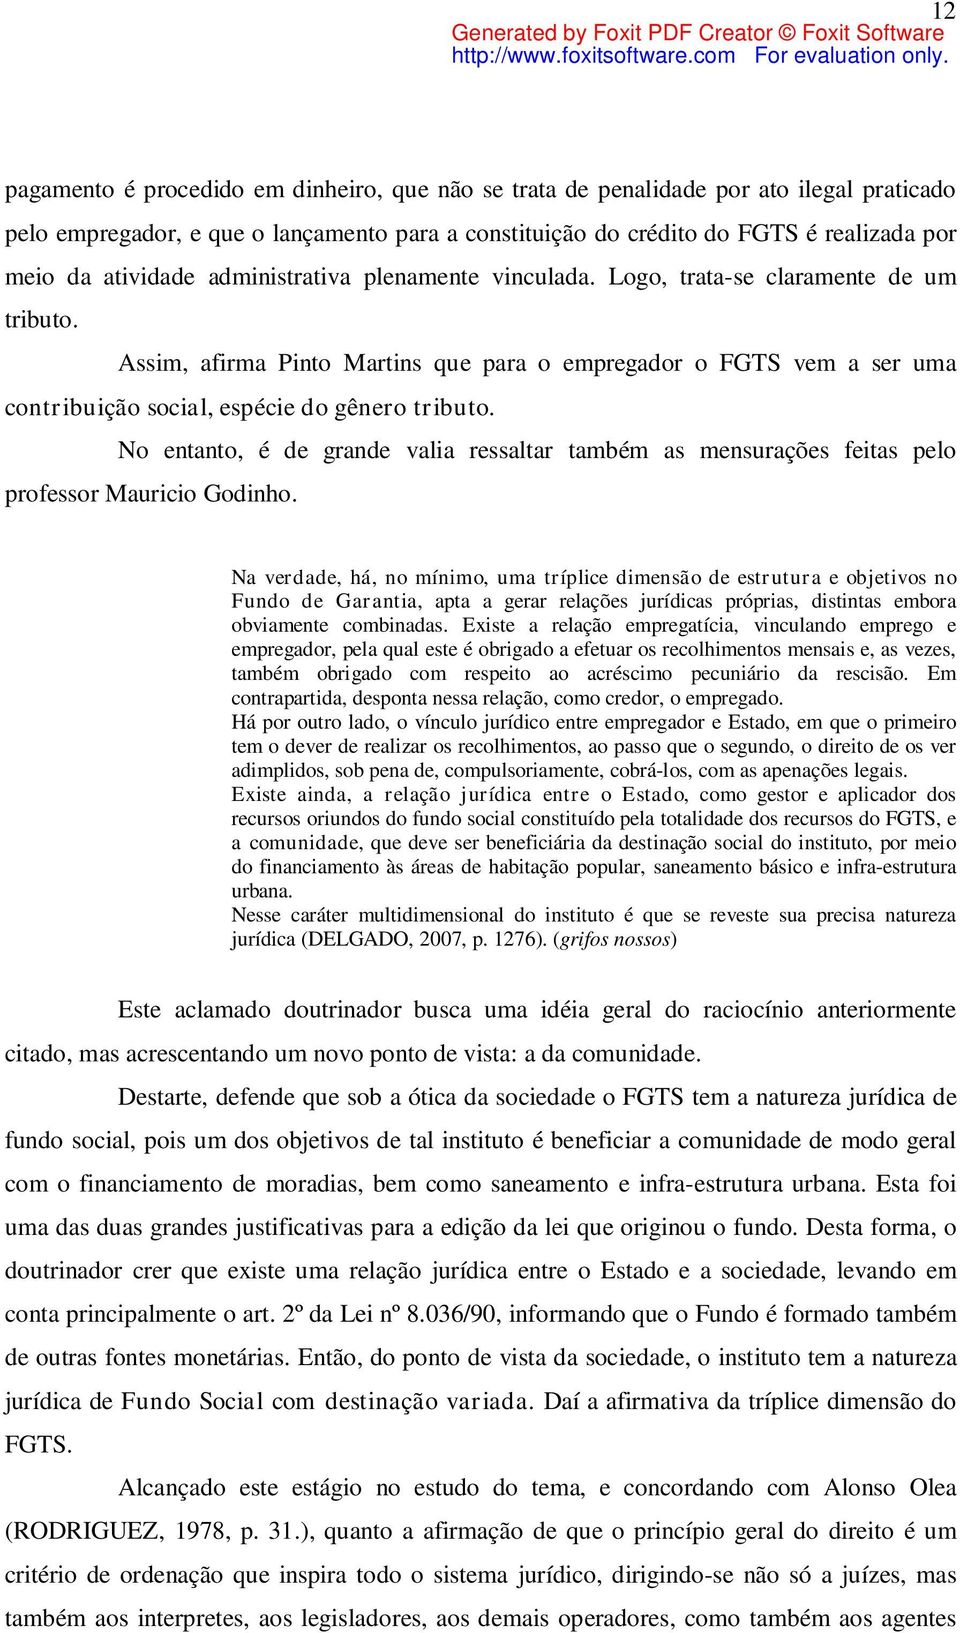 Assim, afirma Pinto Martins que para o empregador o FGTS vem a ser uma contribuição social, espécie do gênero tributo.